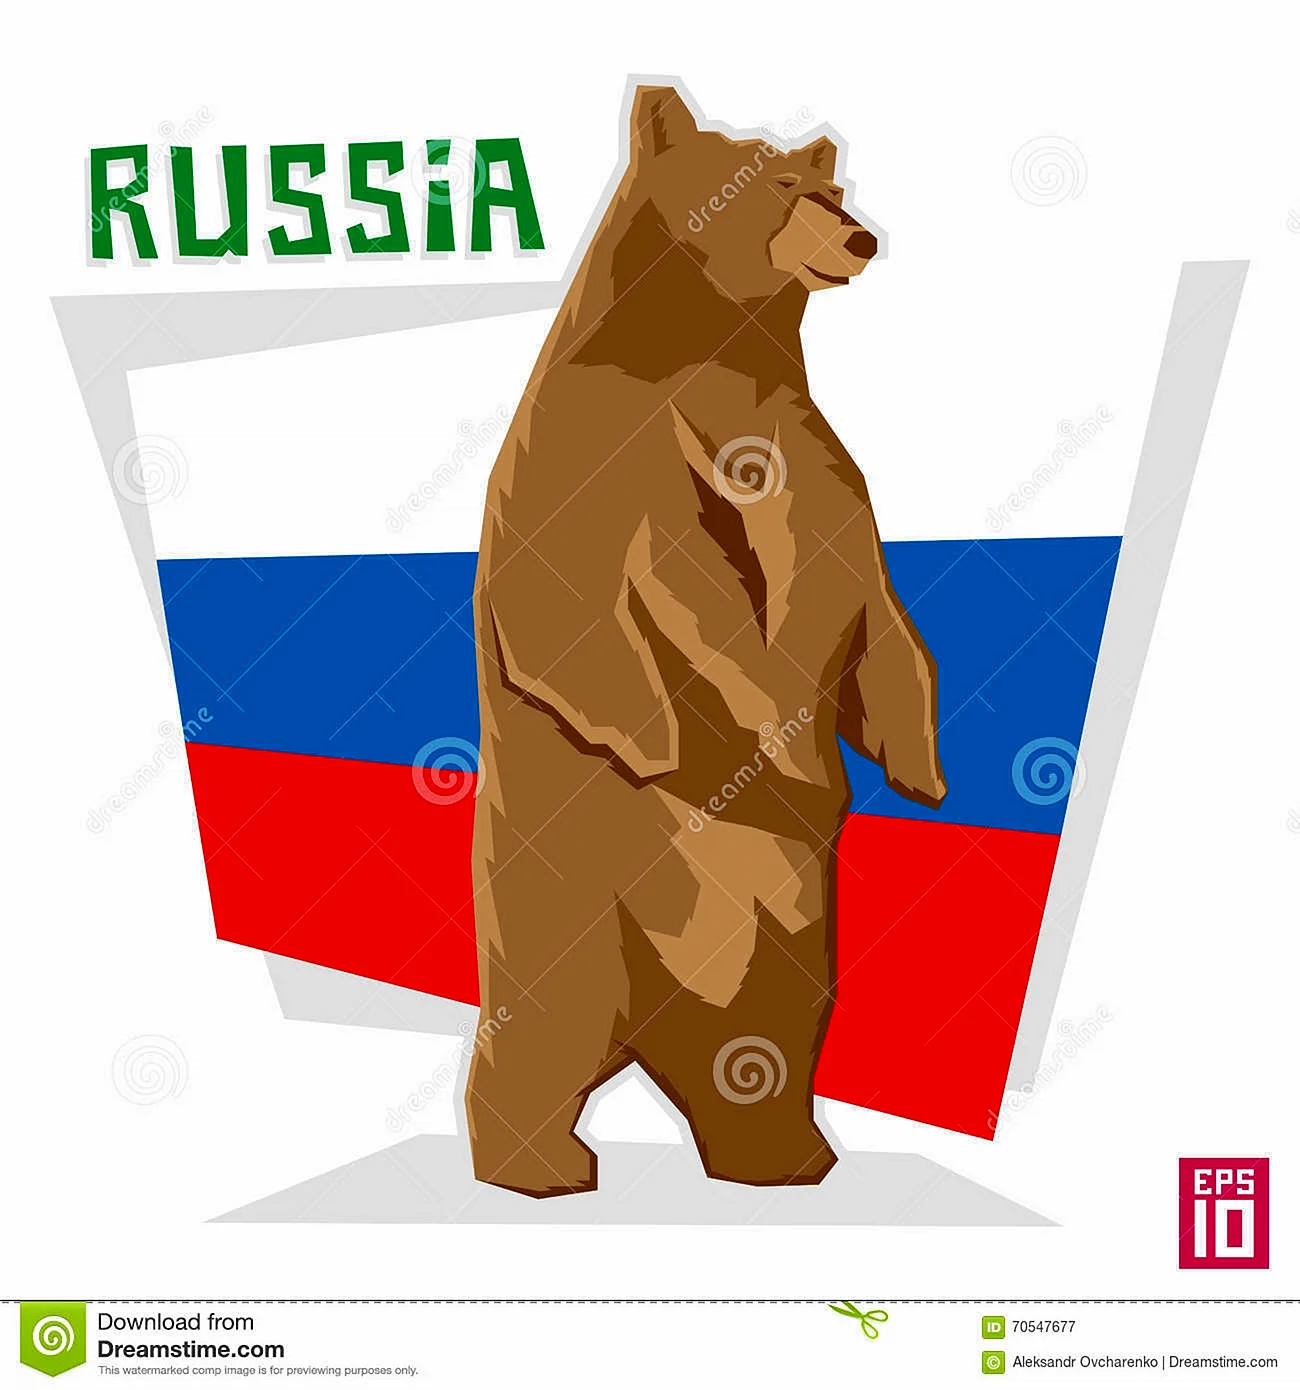 Символика России медведь